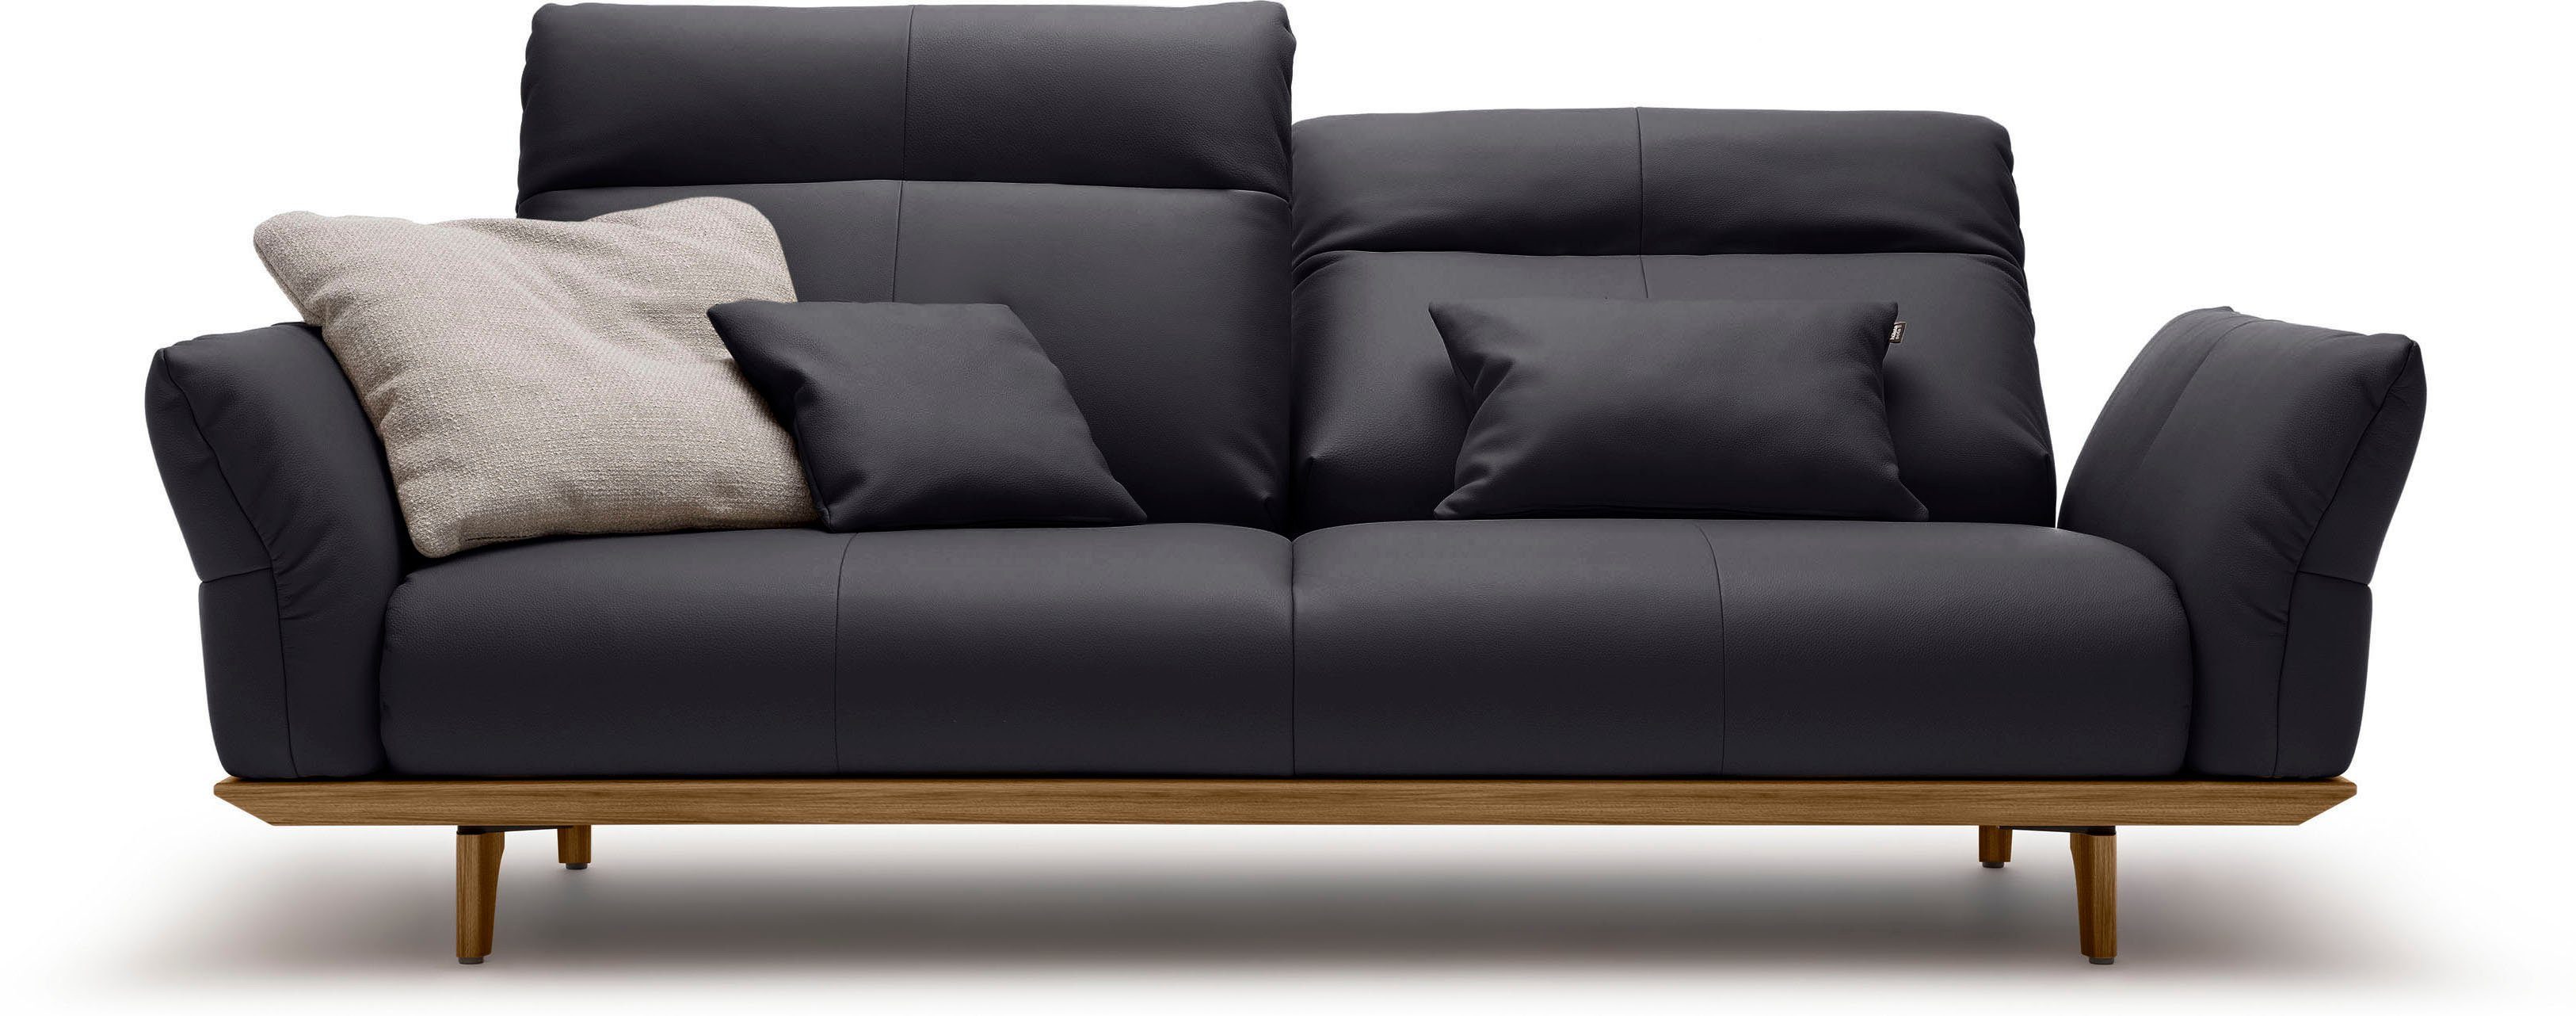 sofa 208 Nussbaum, hs.460, Füße hülsta in Breite Nussbaum, cm Sockel 3-Sitzer